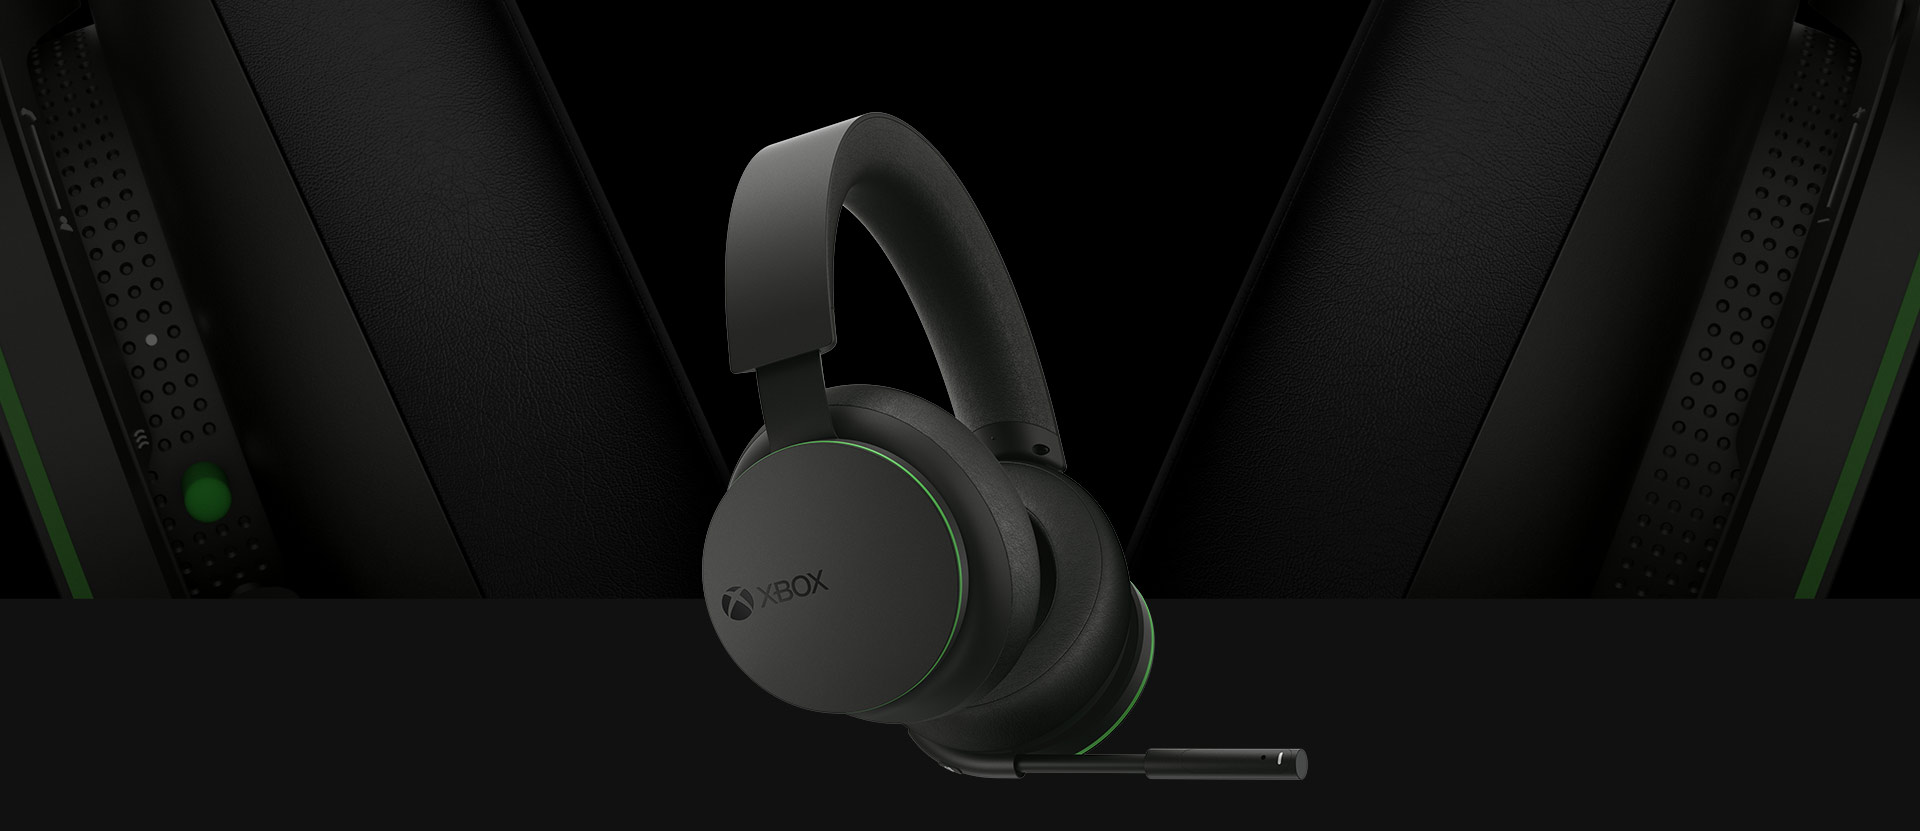 Voor-/hoekaanzicht van de Xbox draadloze headset. Achter de headset zie je een groter detailaanzicht van de oorschelpen.